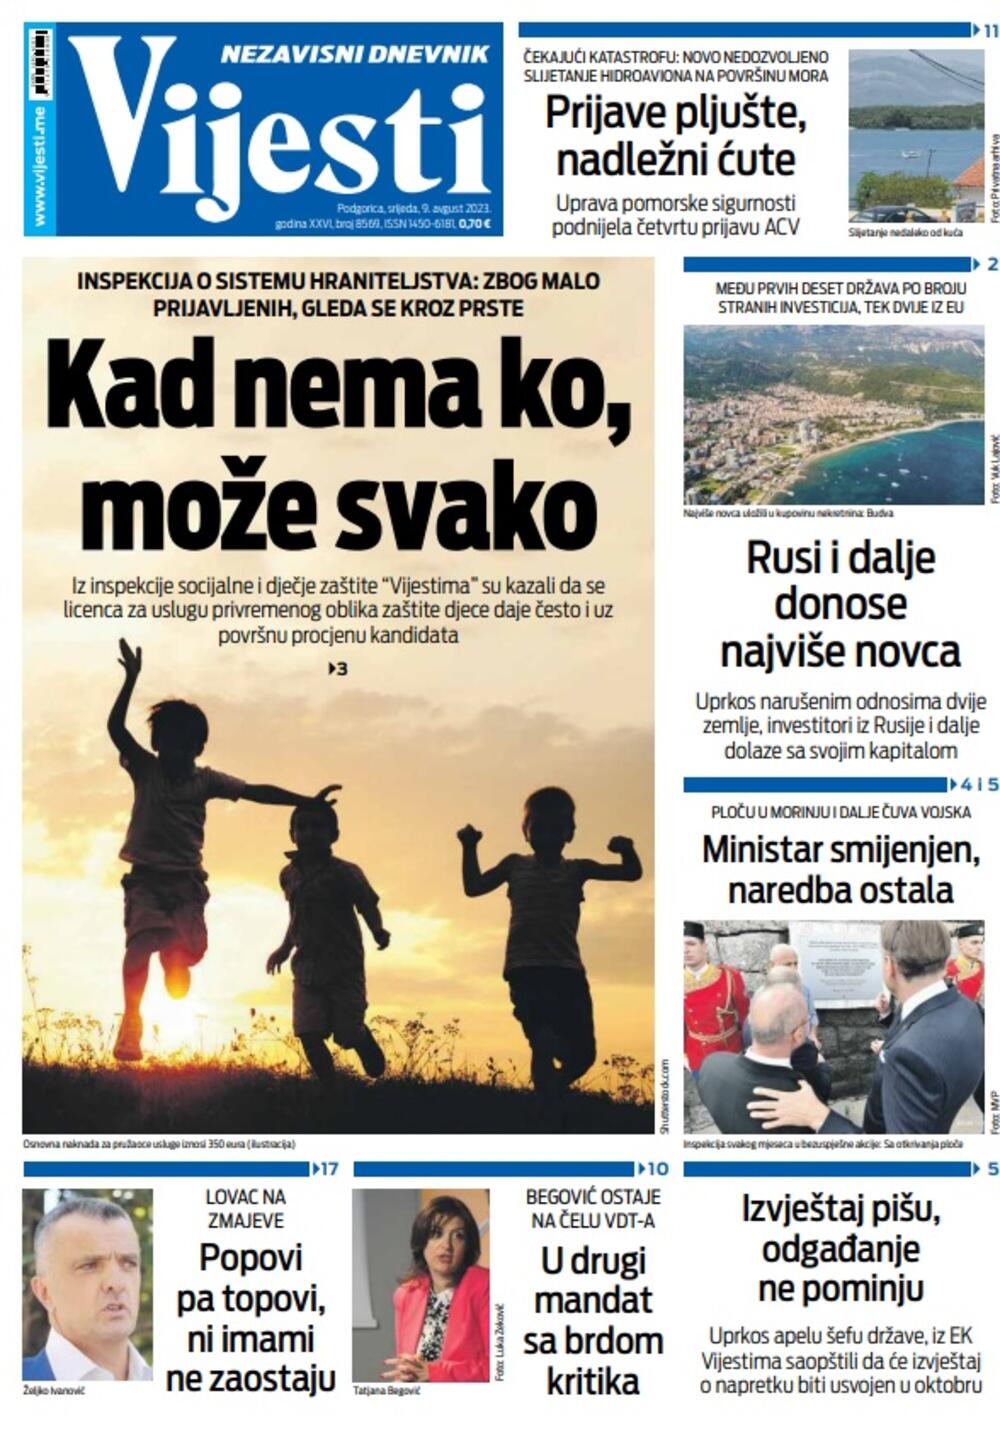 Naslovna strana "Vijesti" za 9. avgust 2023., Foto: Vijesti